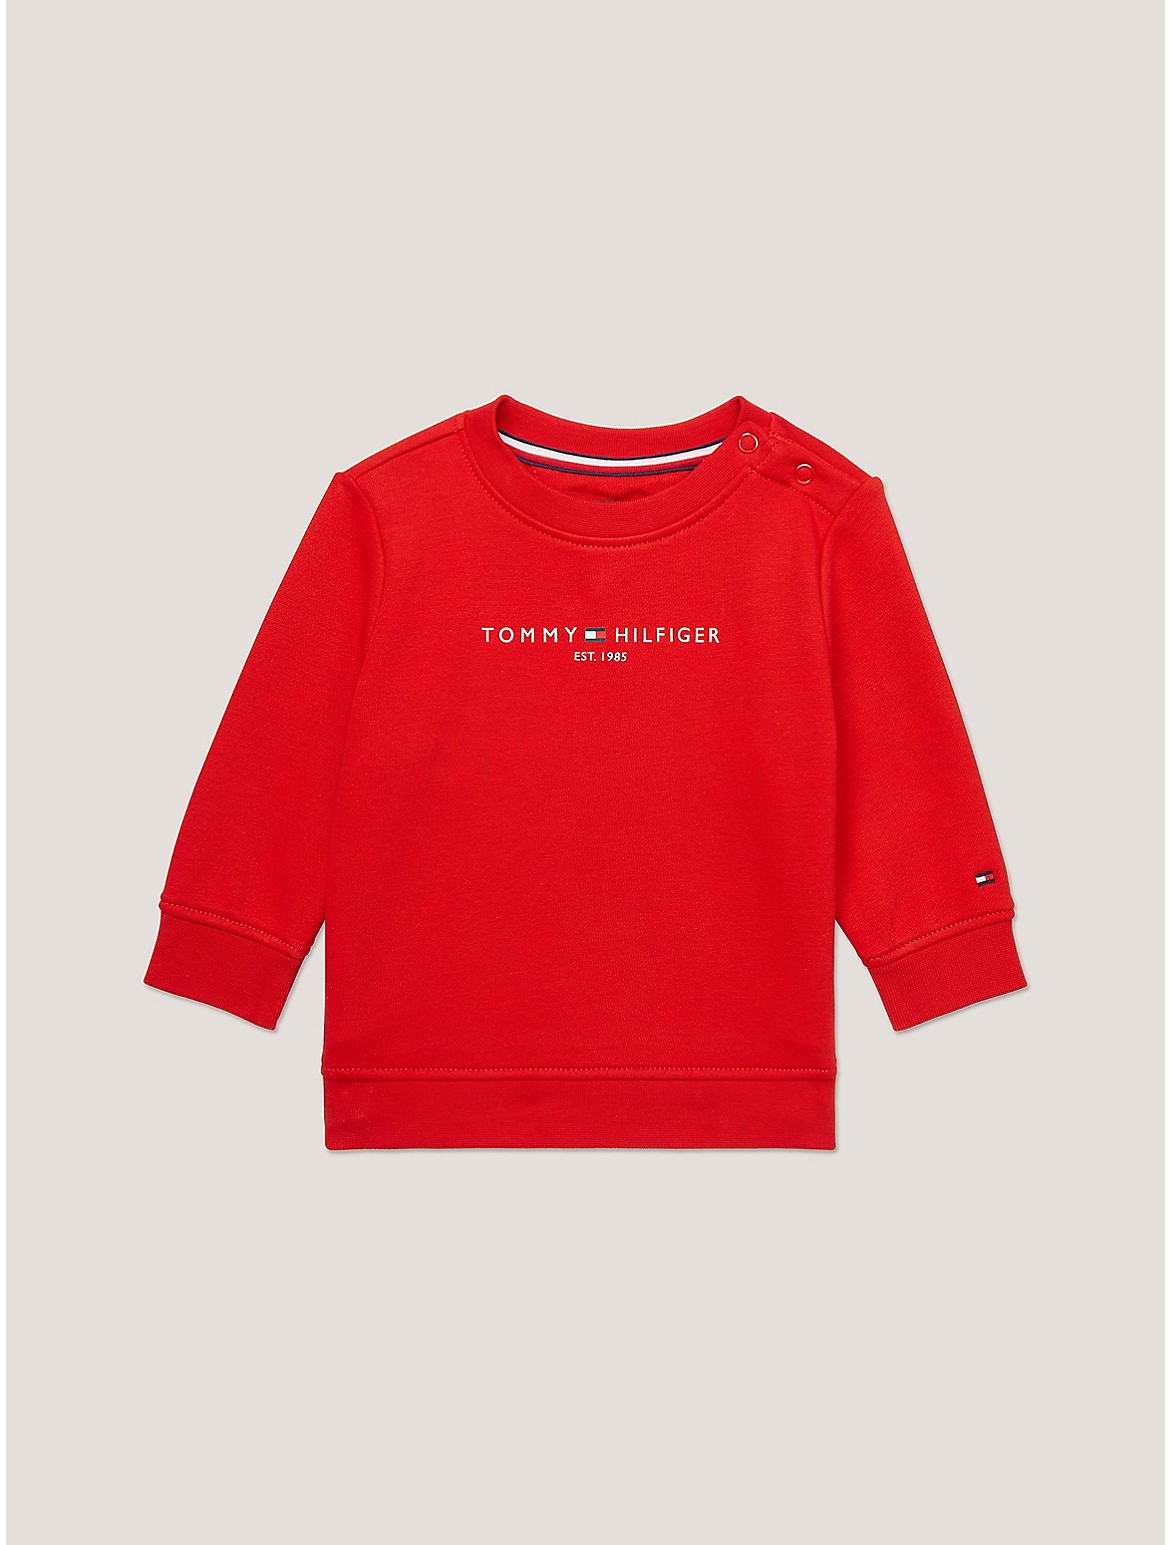 Tommy Hilfiger Boys' Babies' Tommy Logo Sweatshirt - Red - 24M